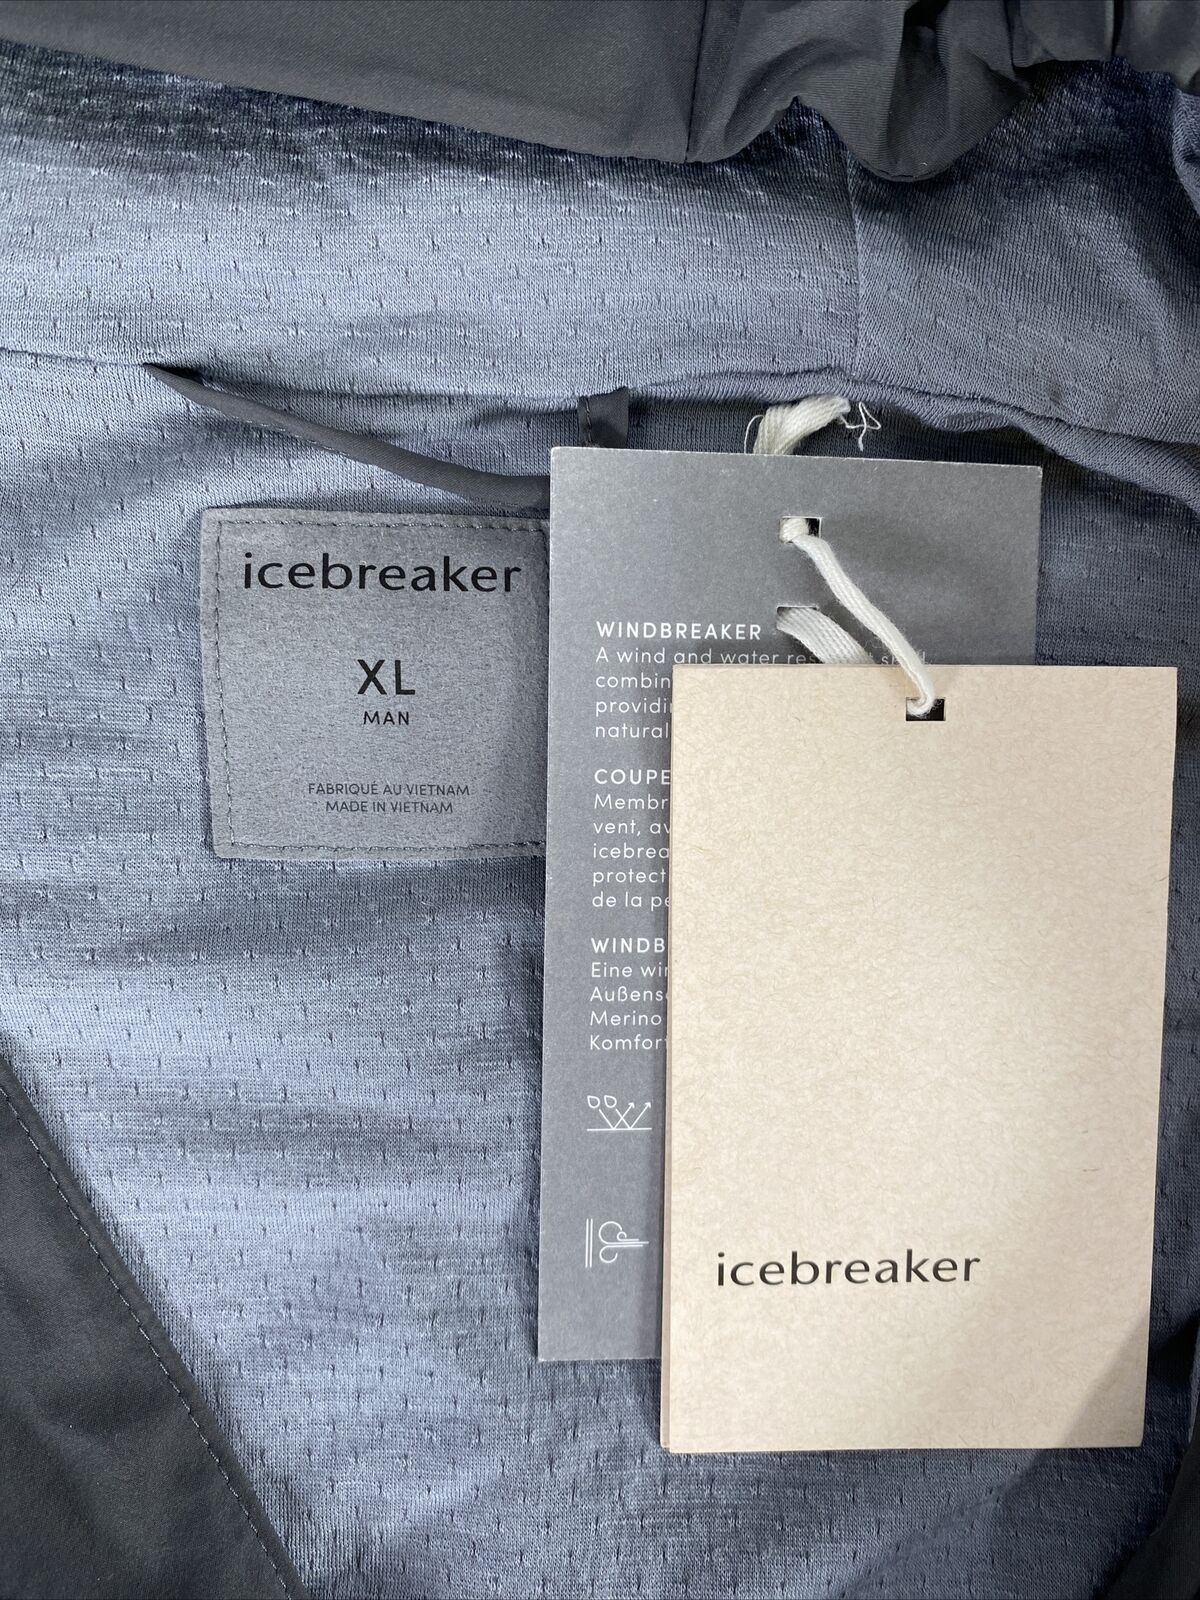 NUEVA chaqueta cortavientos con capucha Icebreaker Tropos gris para hombre - XL